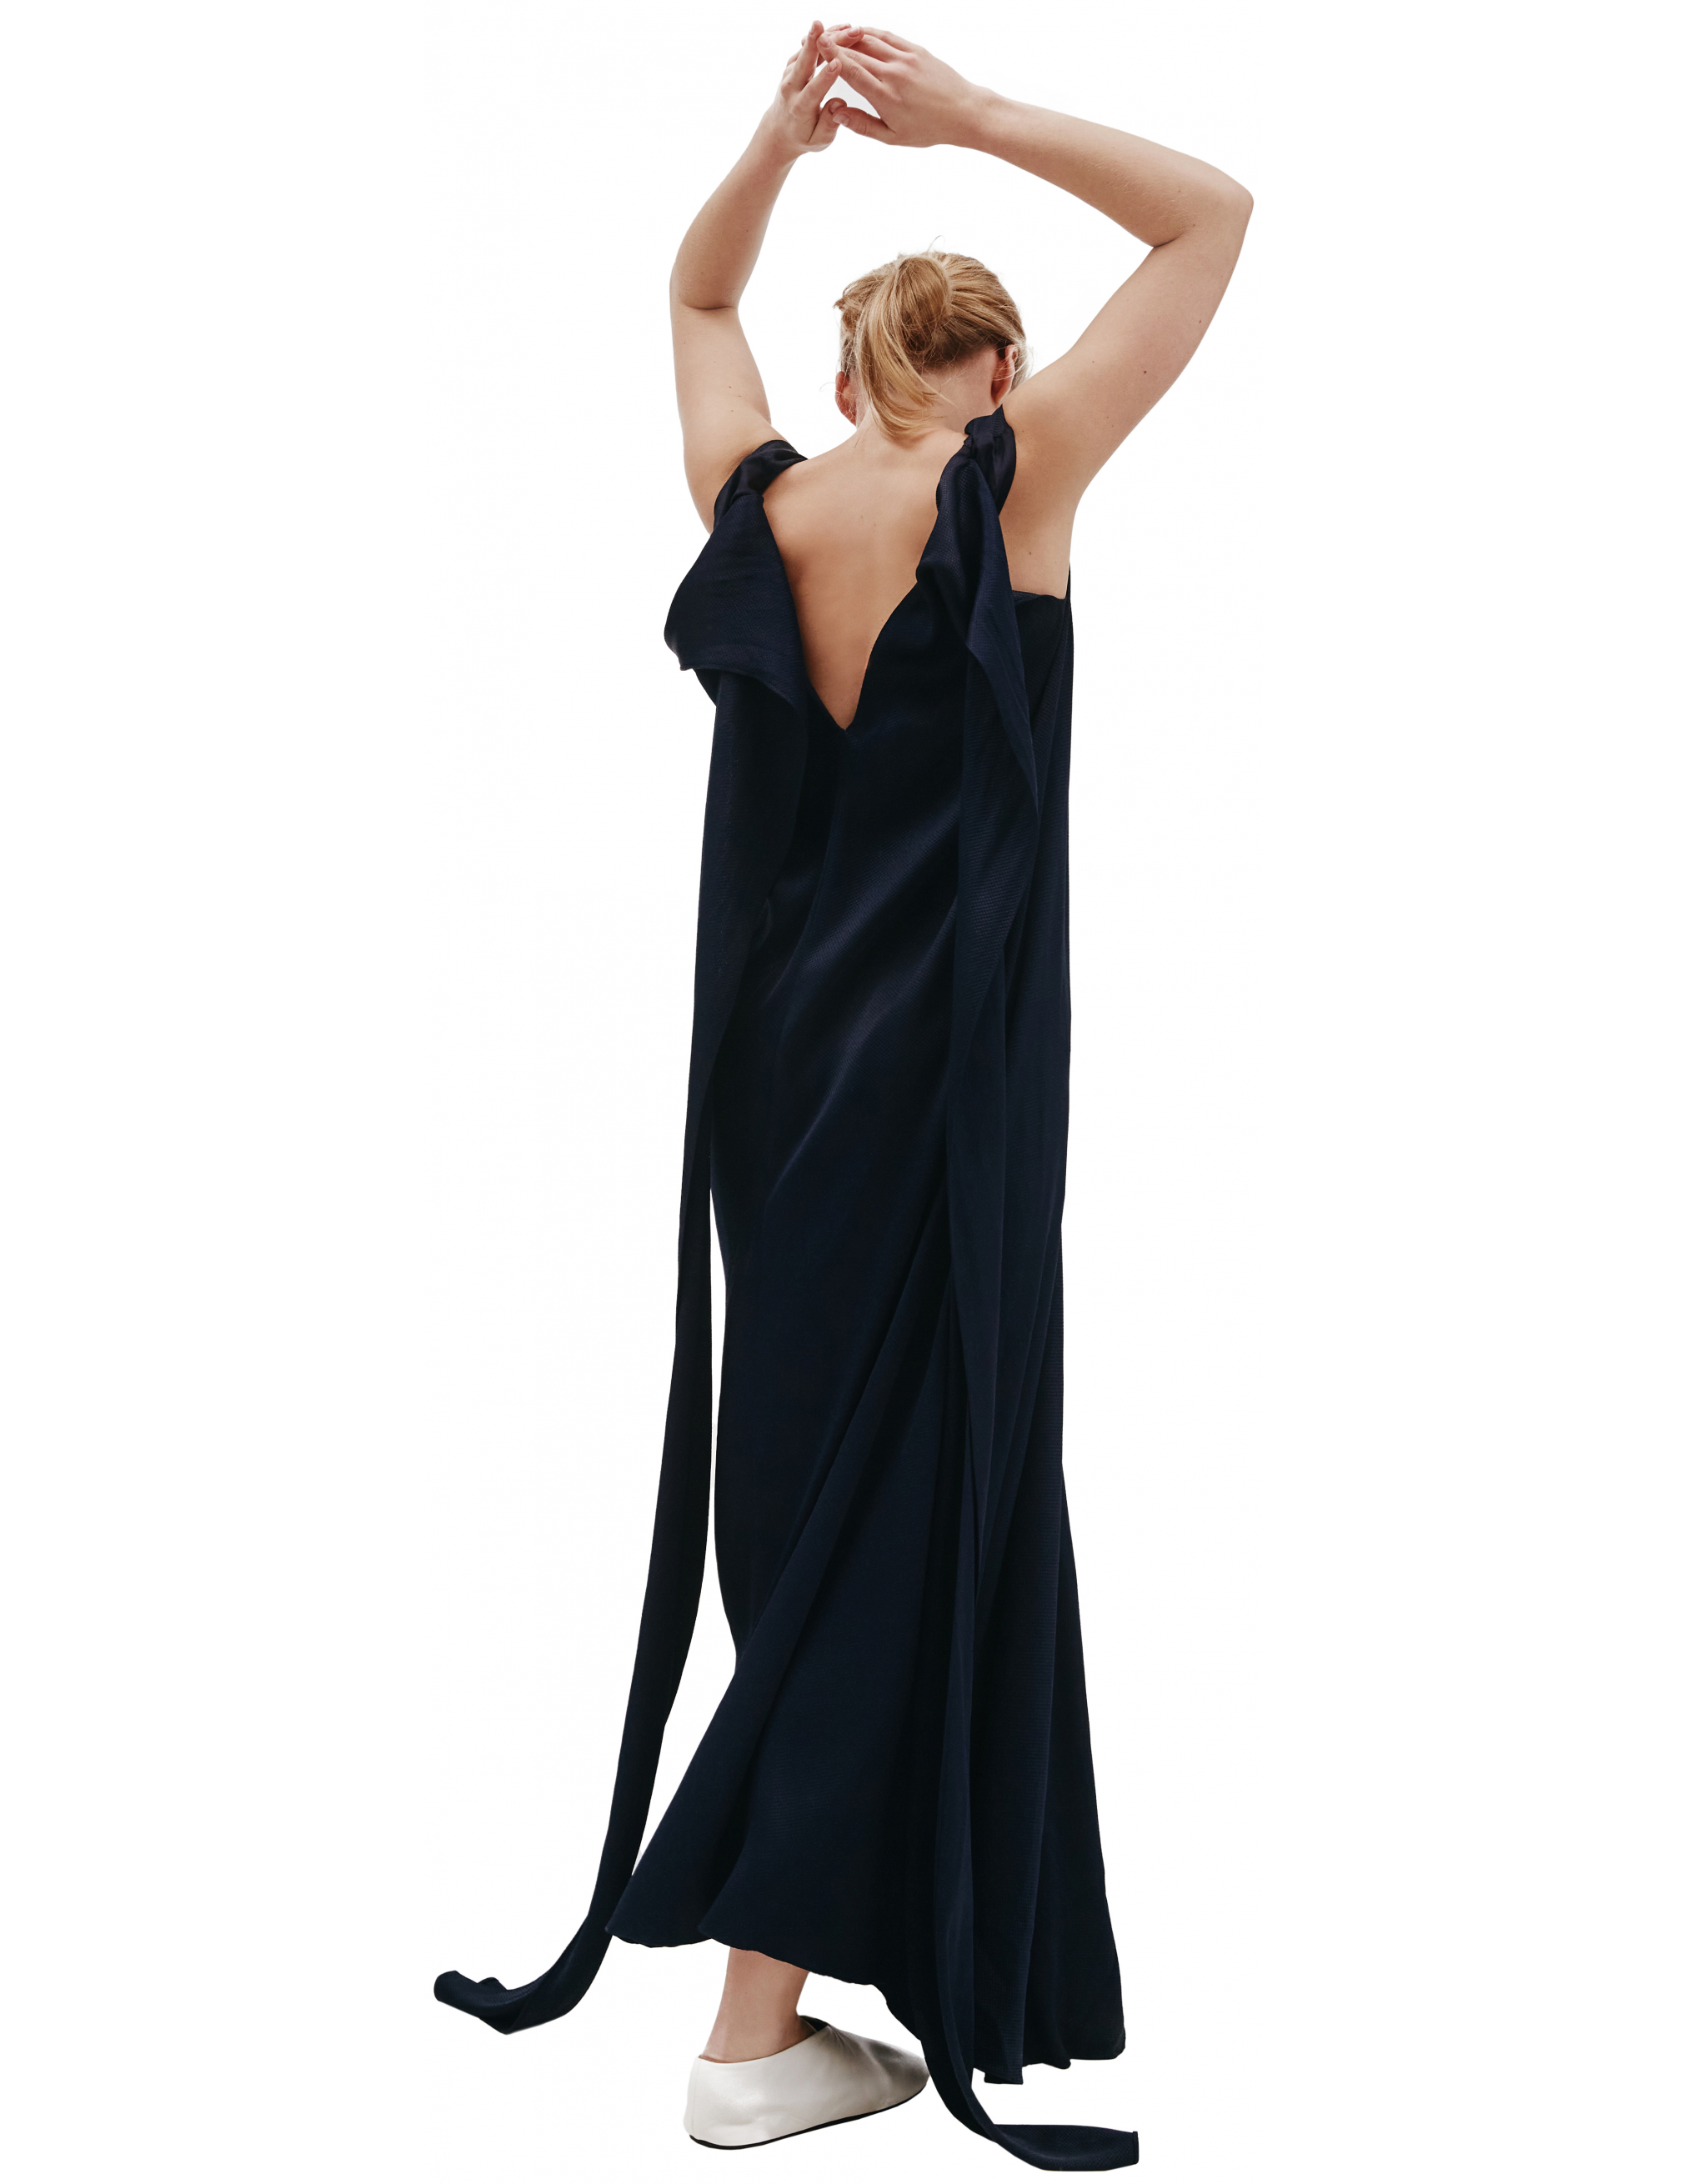 Синее платье Remi с открытой спиной - The Row 4413/navy Фото 3